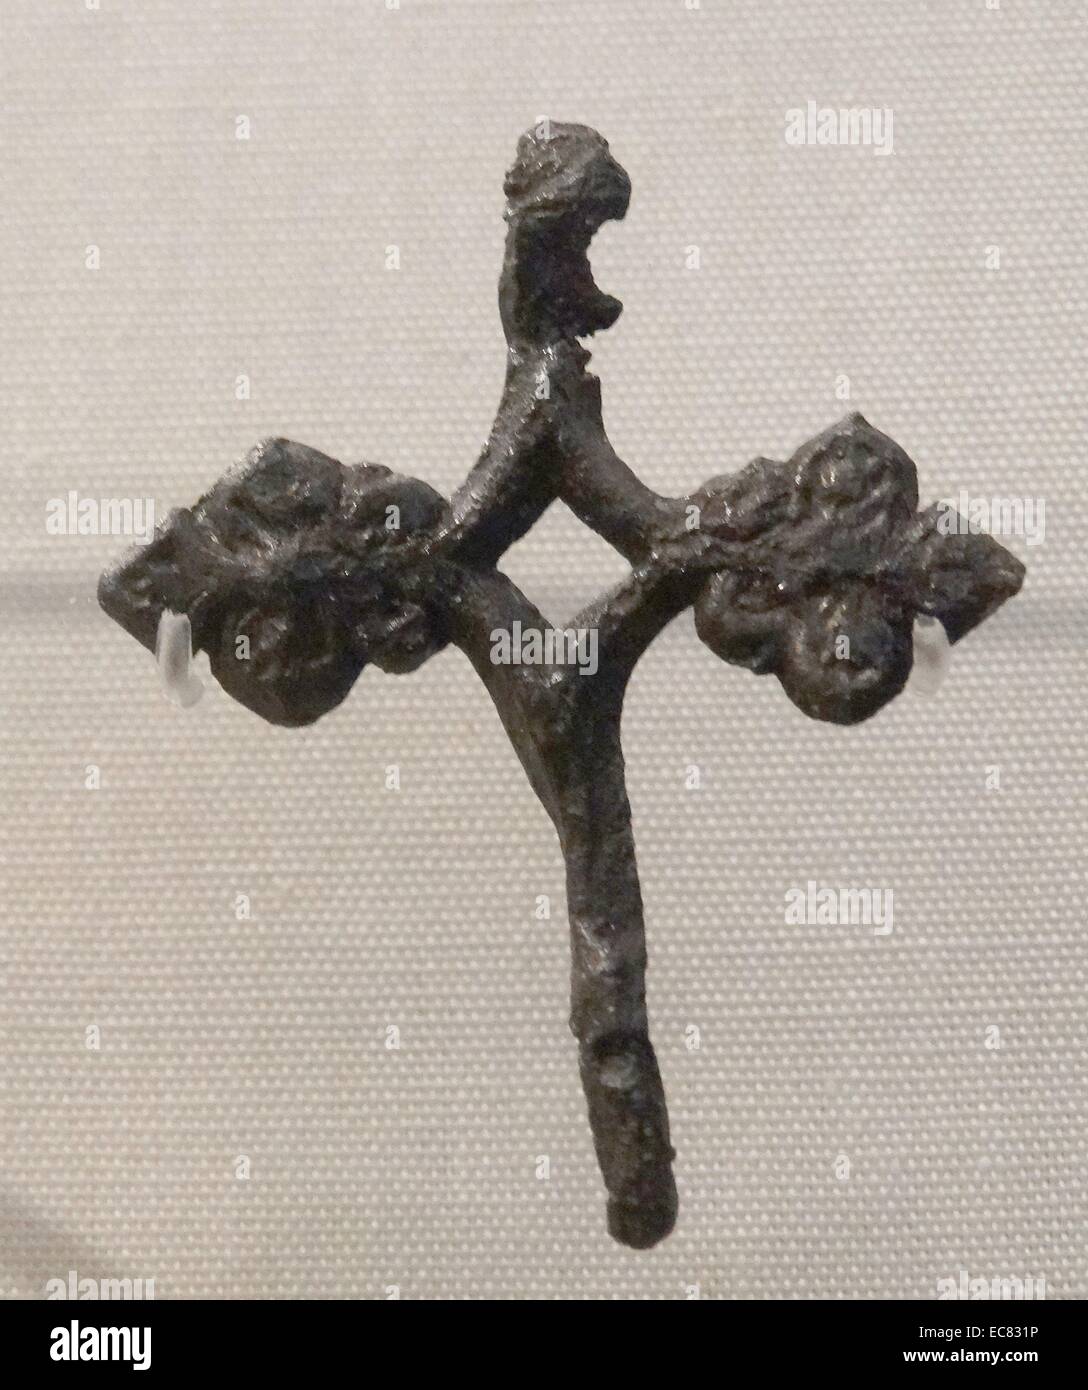 Ampoule, insigne religieux portés par les Anglais, les pèlerins chrétiens du Moyen Âge au 13ème siècle Banque D'Images